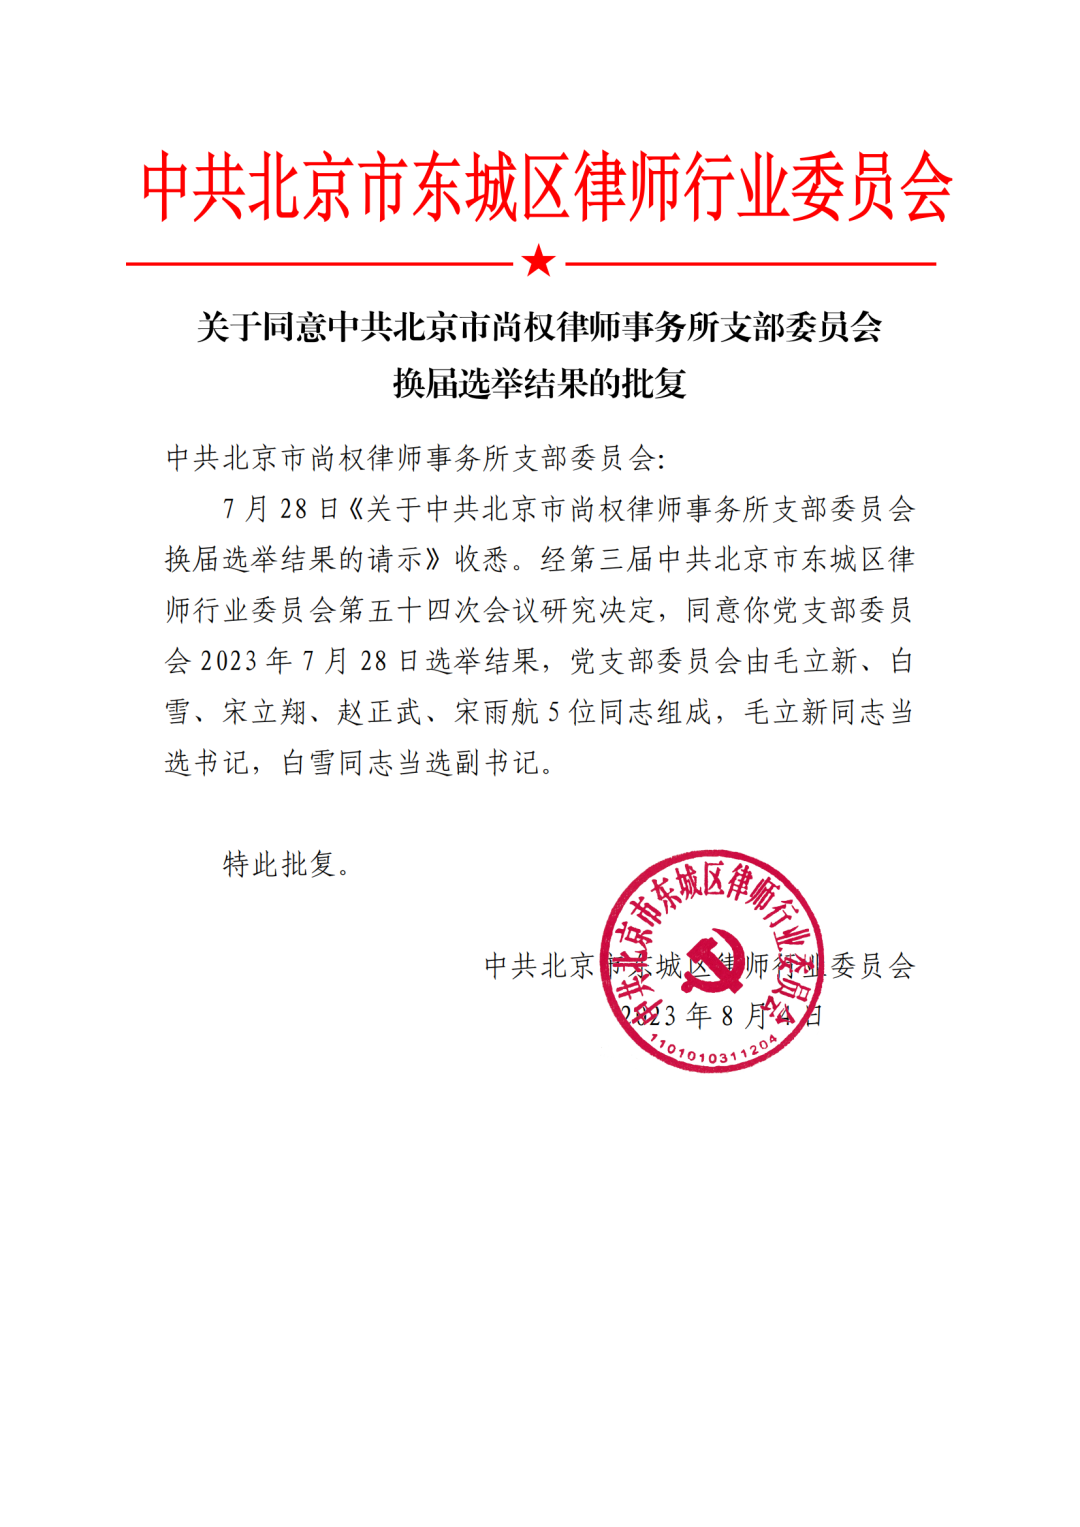 尚权资讯 | 中共北京市尚权律师事务所党支部圆满完成换届选举